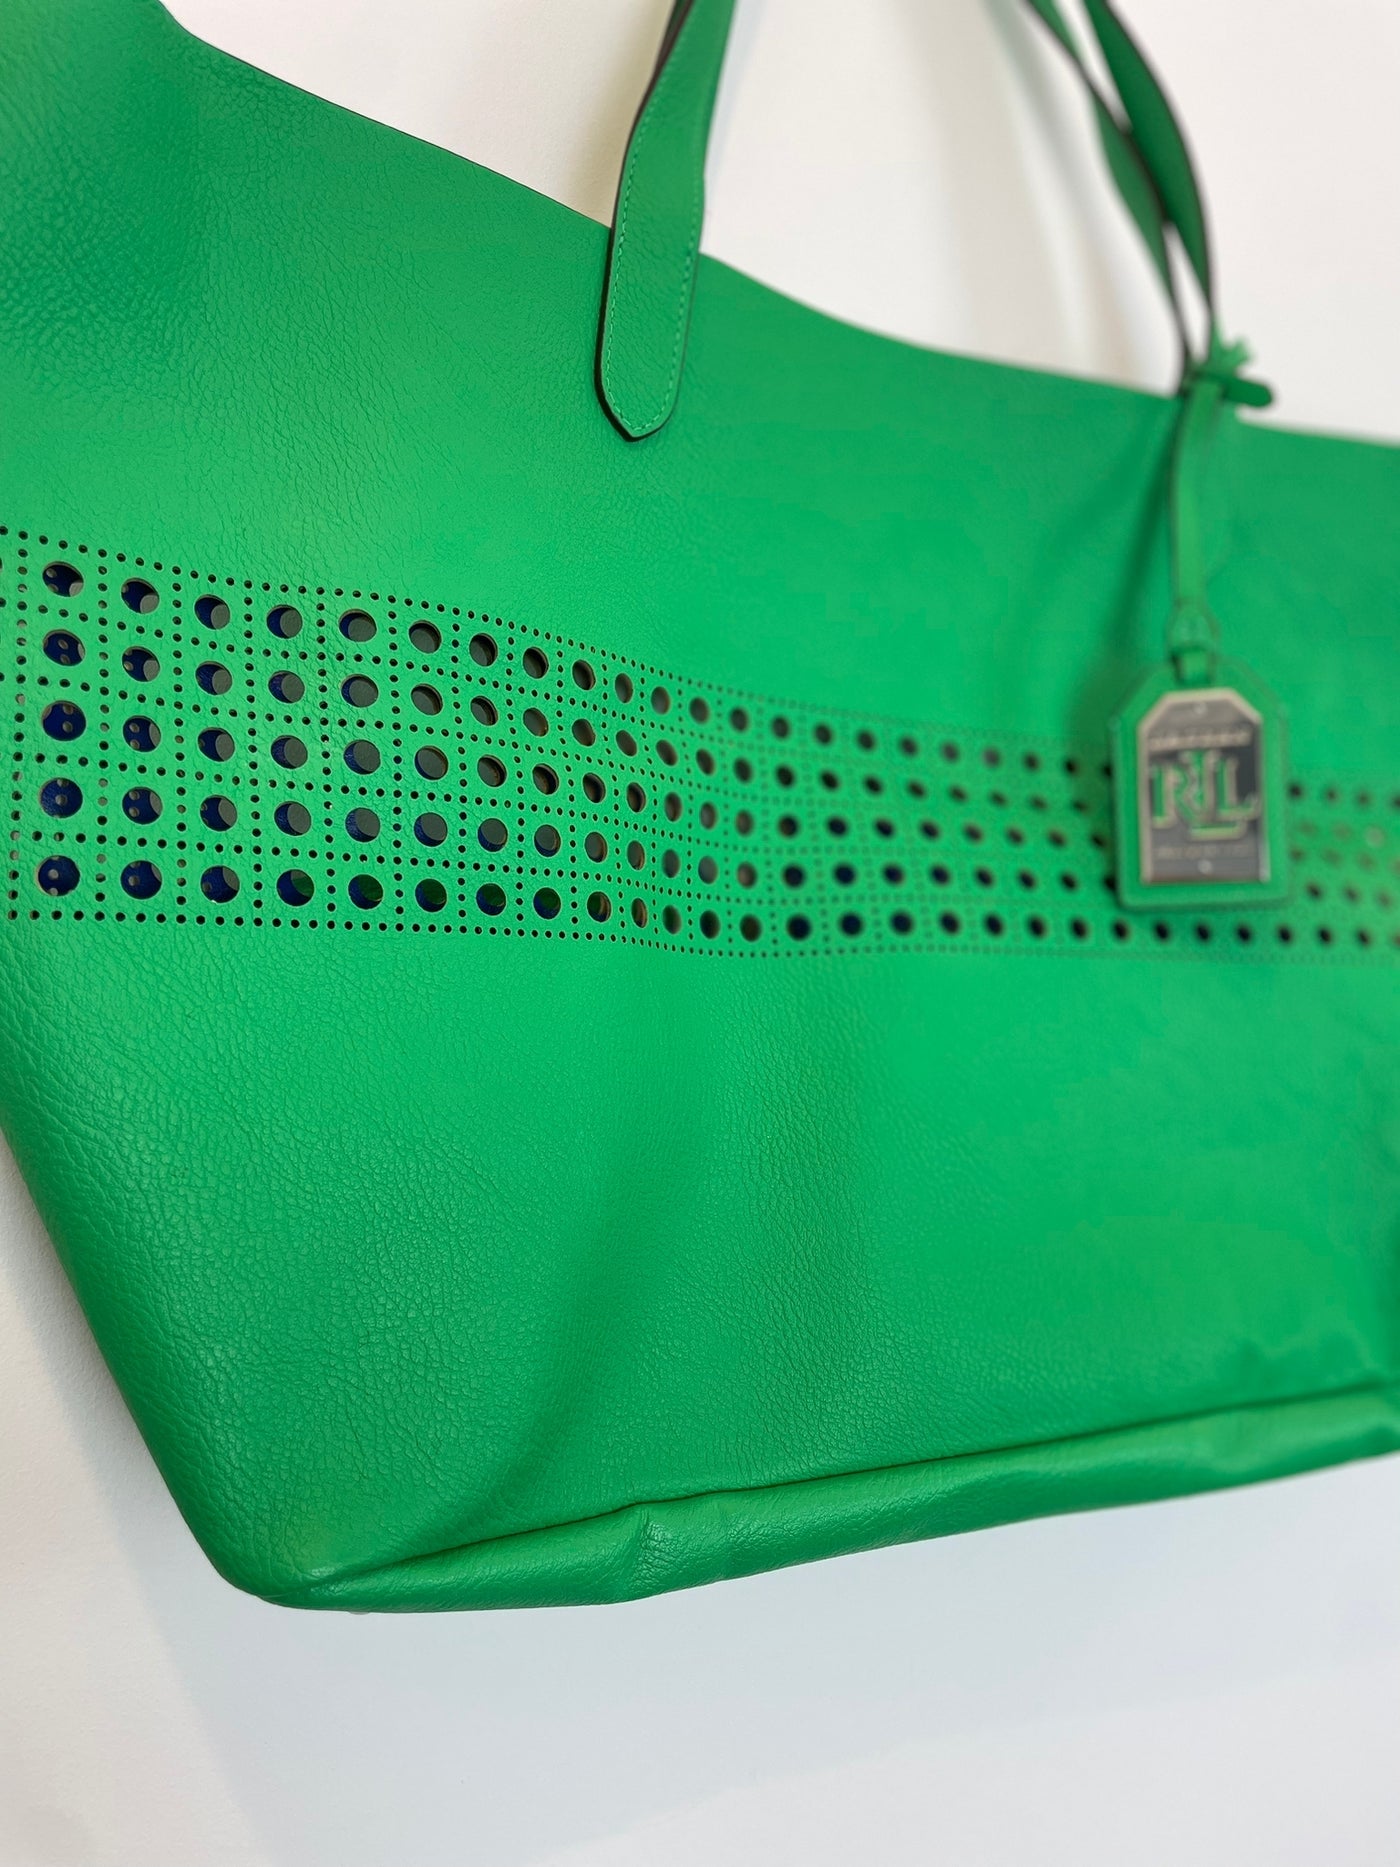 Green Ralph Lauren handbag with purse